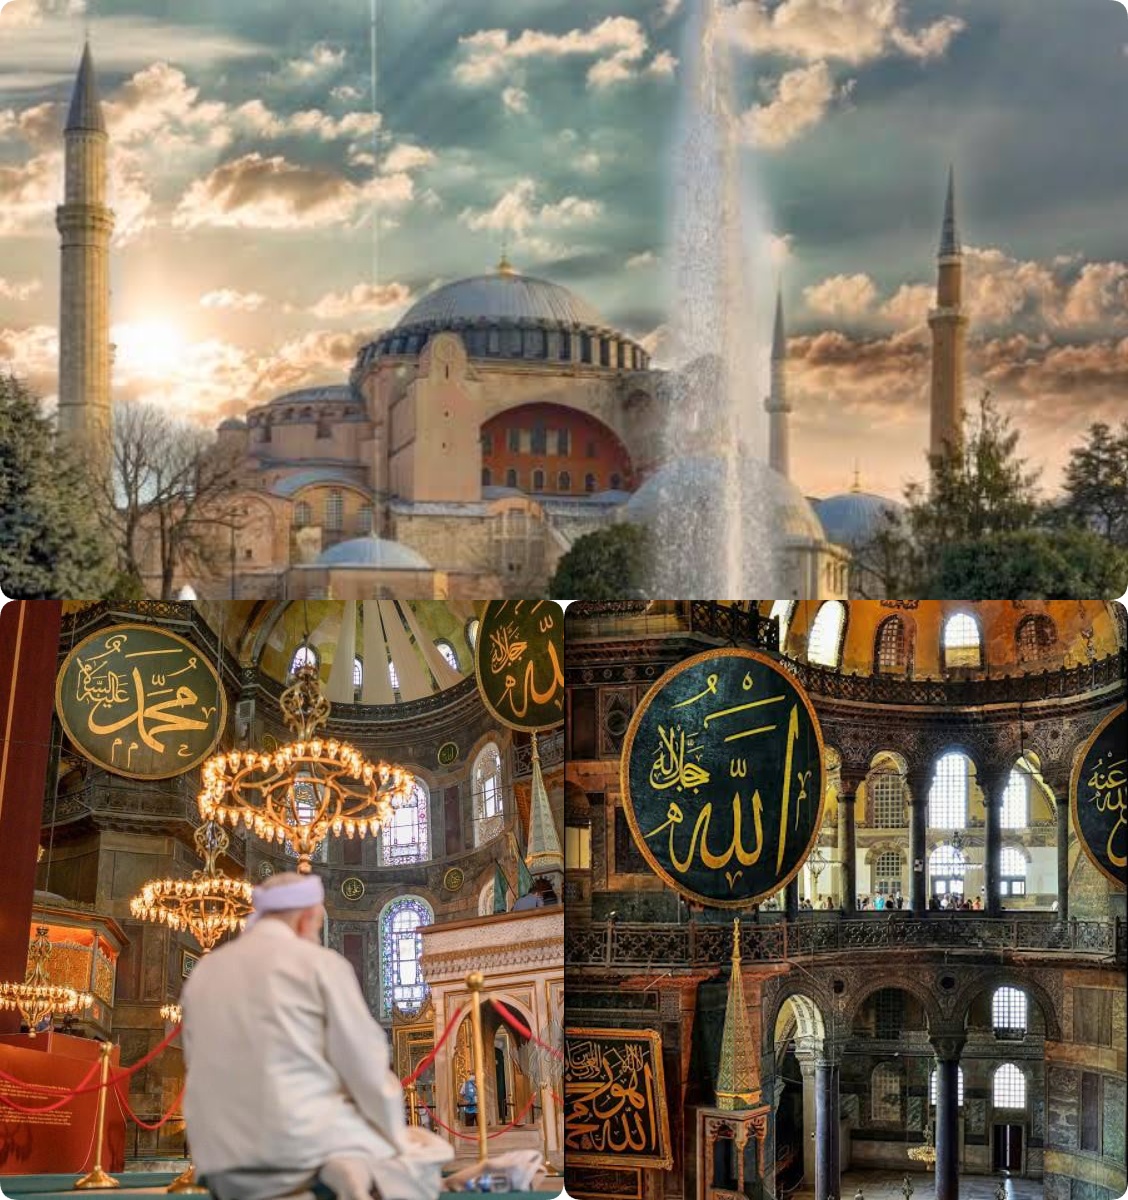 Hagia Sophia: Gereja yang Diubah Menjadi Masjid dan Meseum Peninggalan Kekaisaran Byzantium Turkey